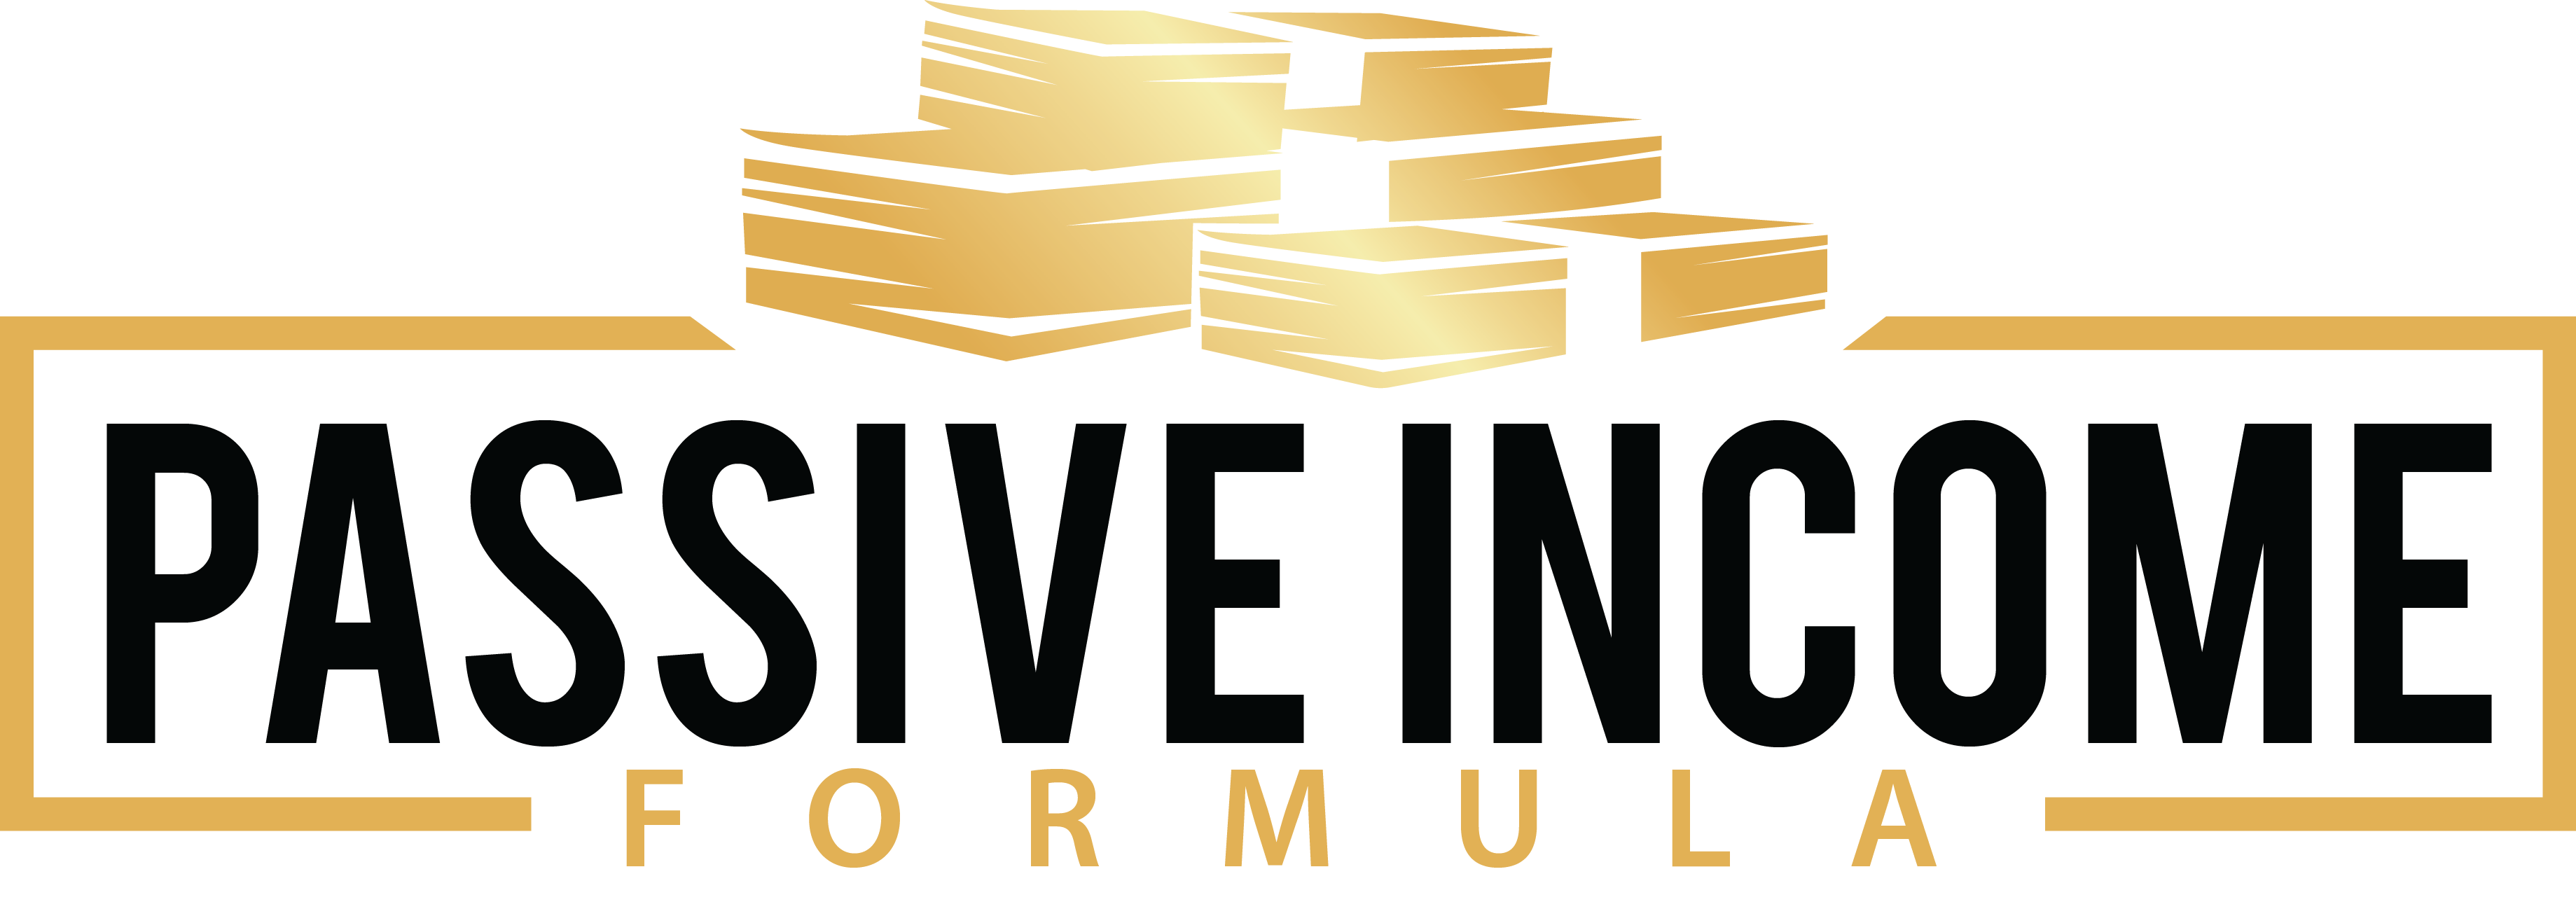 passive income formula review